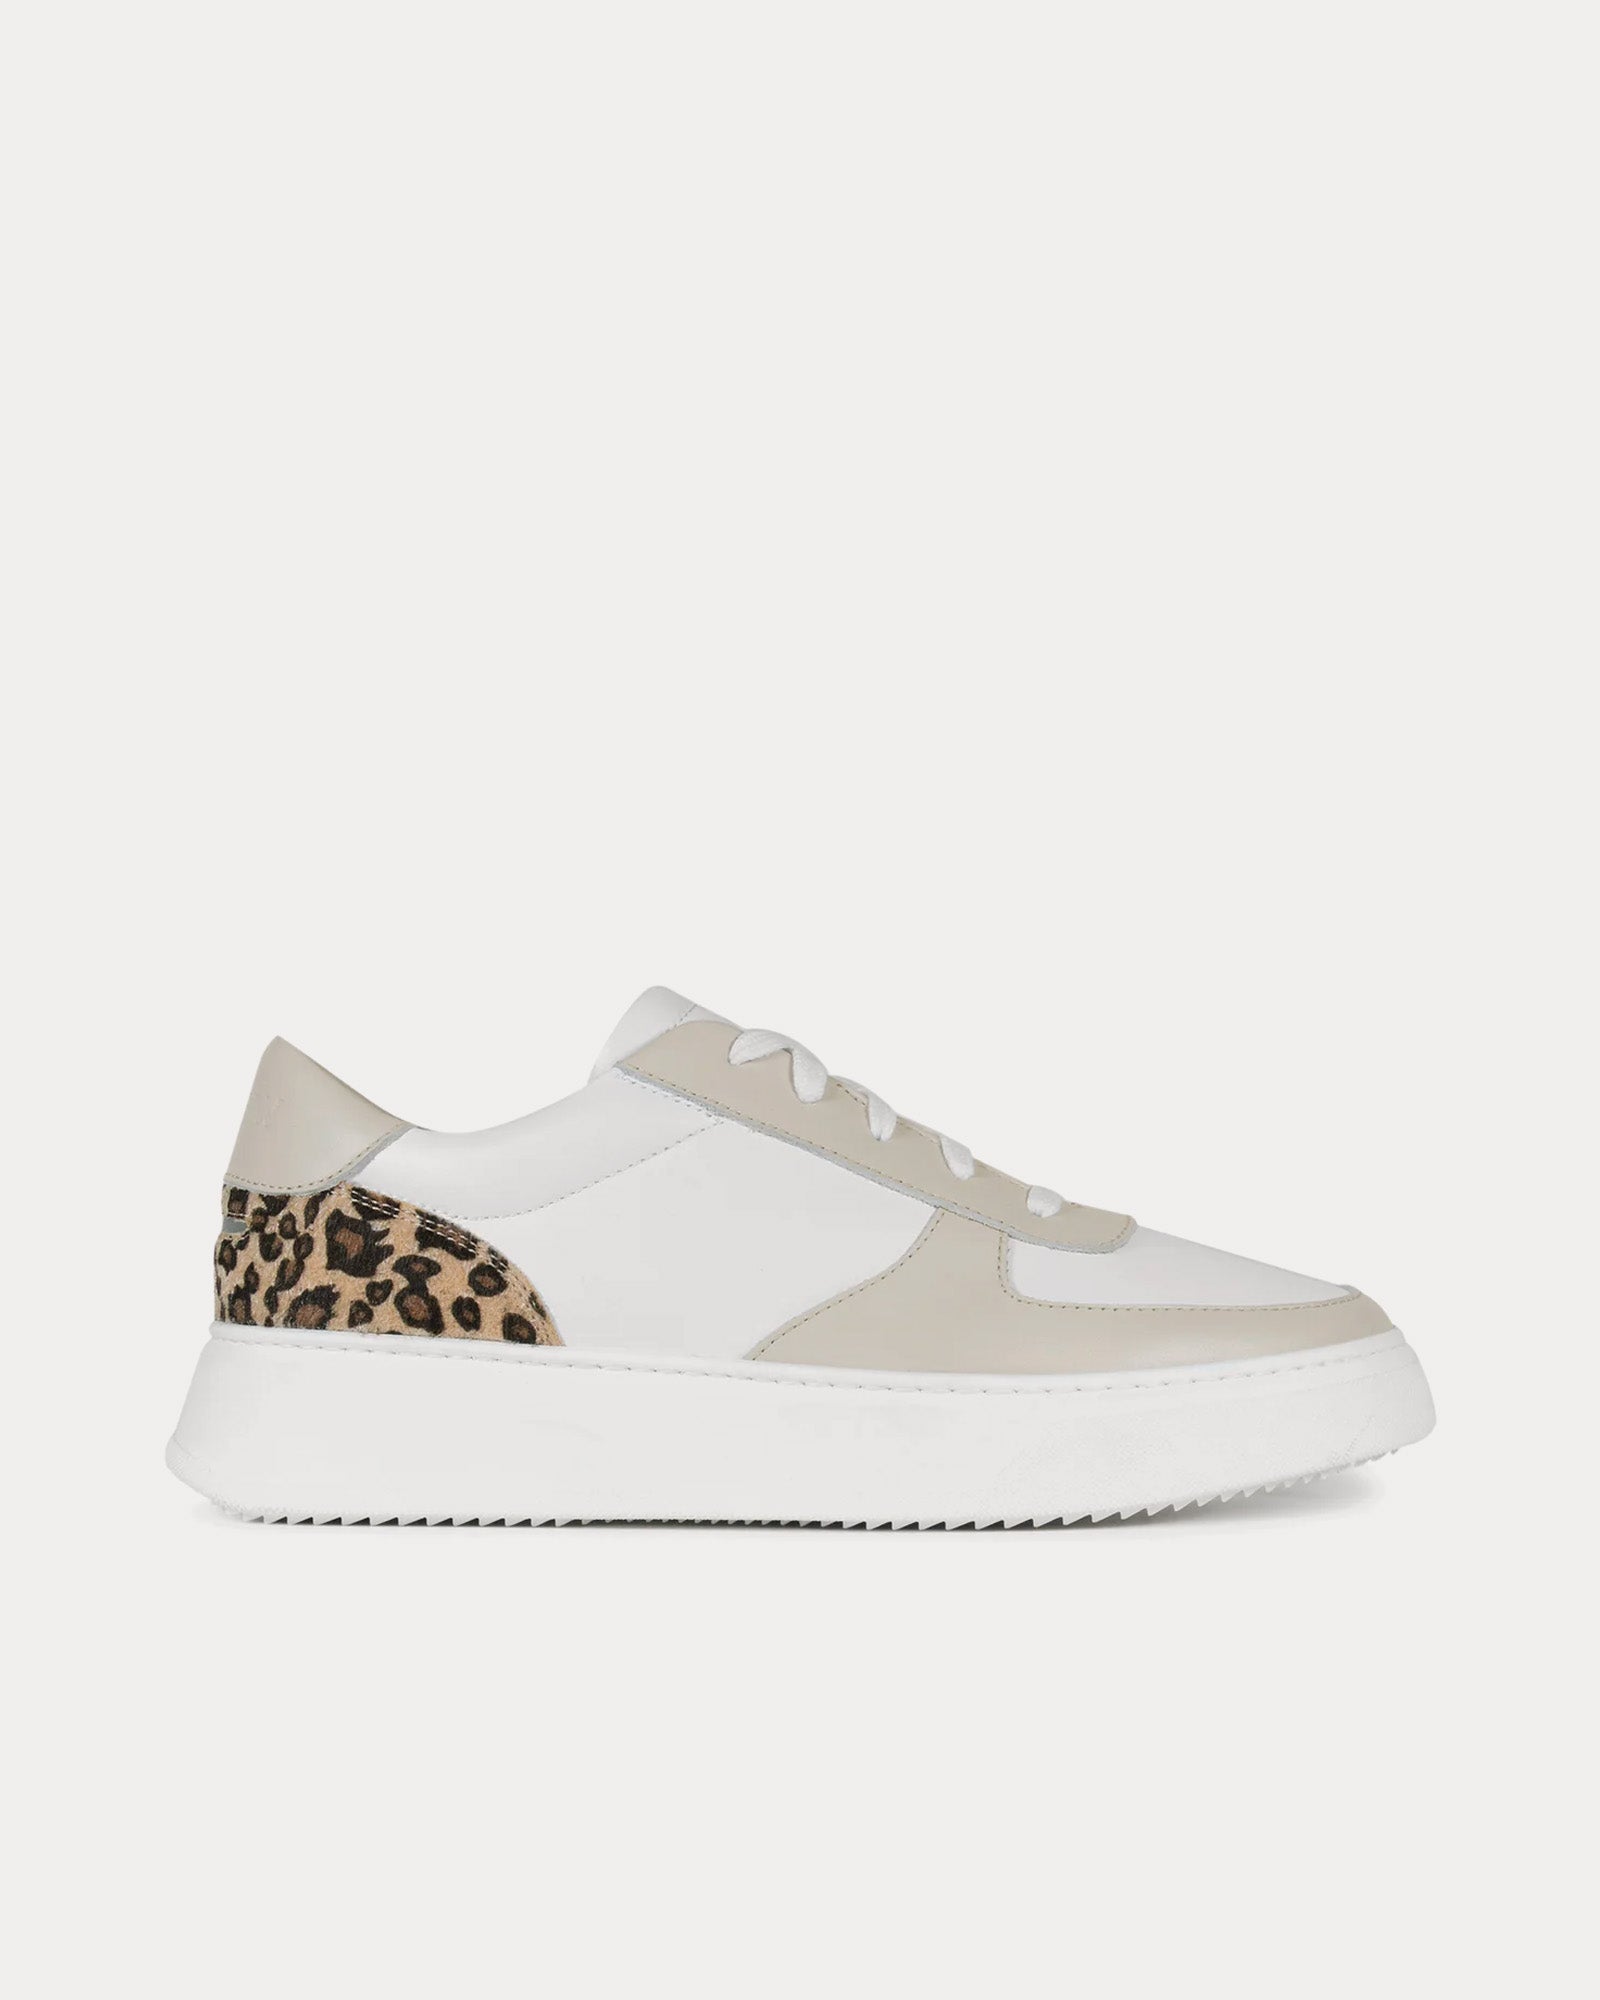 Unseen Footwear - Marais Leather & Suede Sand / Leopard Low Top Sneakers